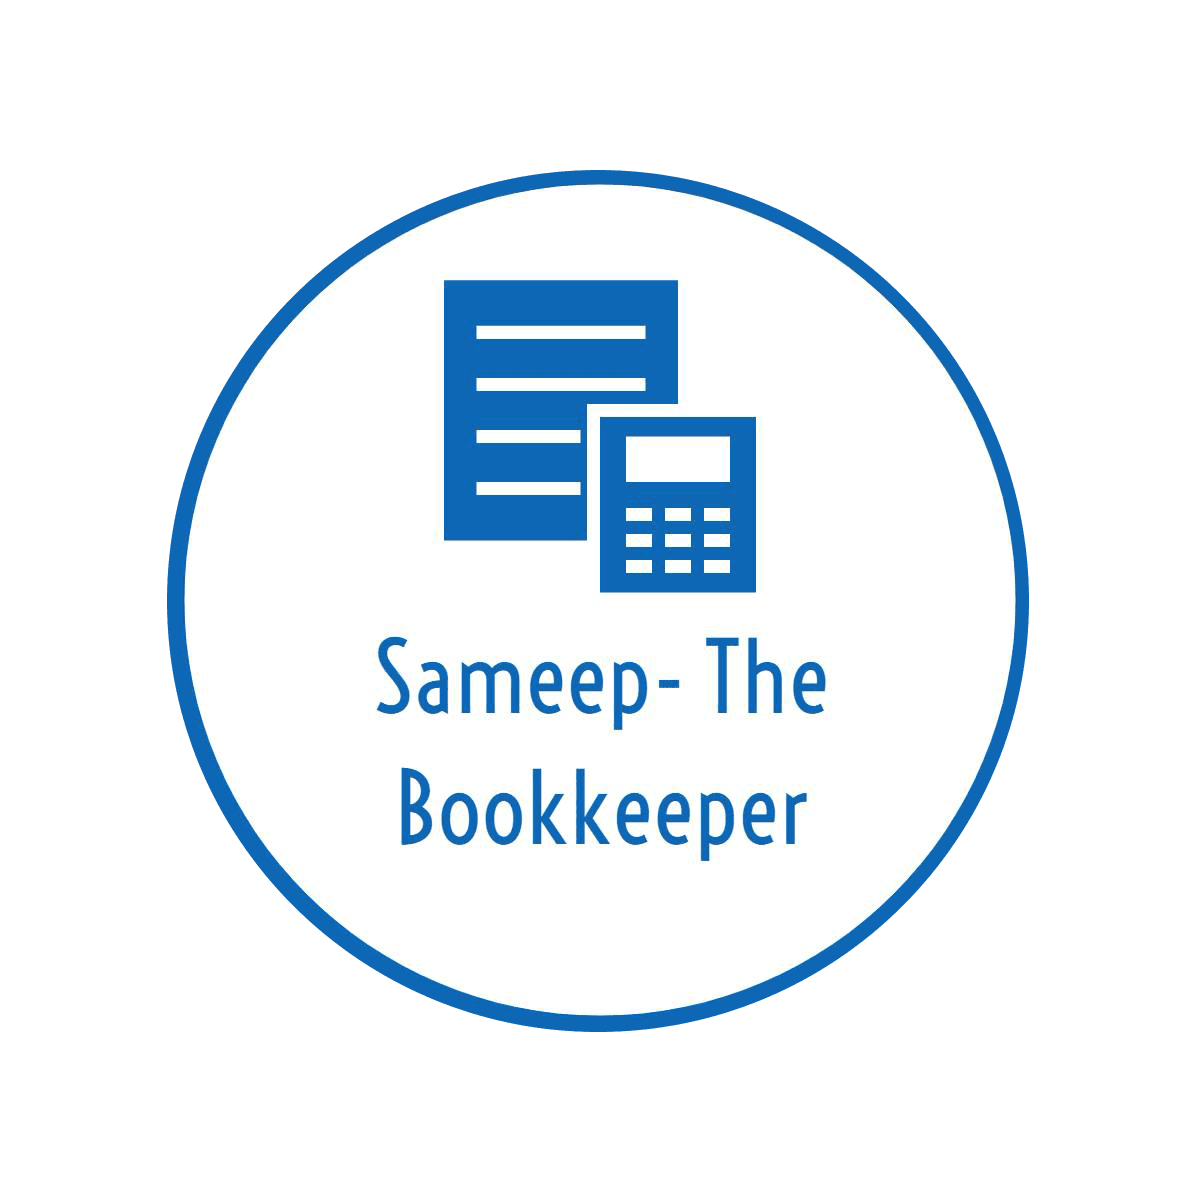 Sameep- The Bookkeeper